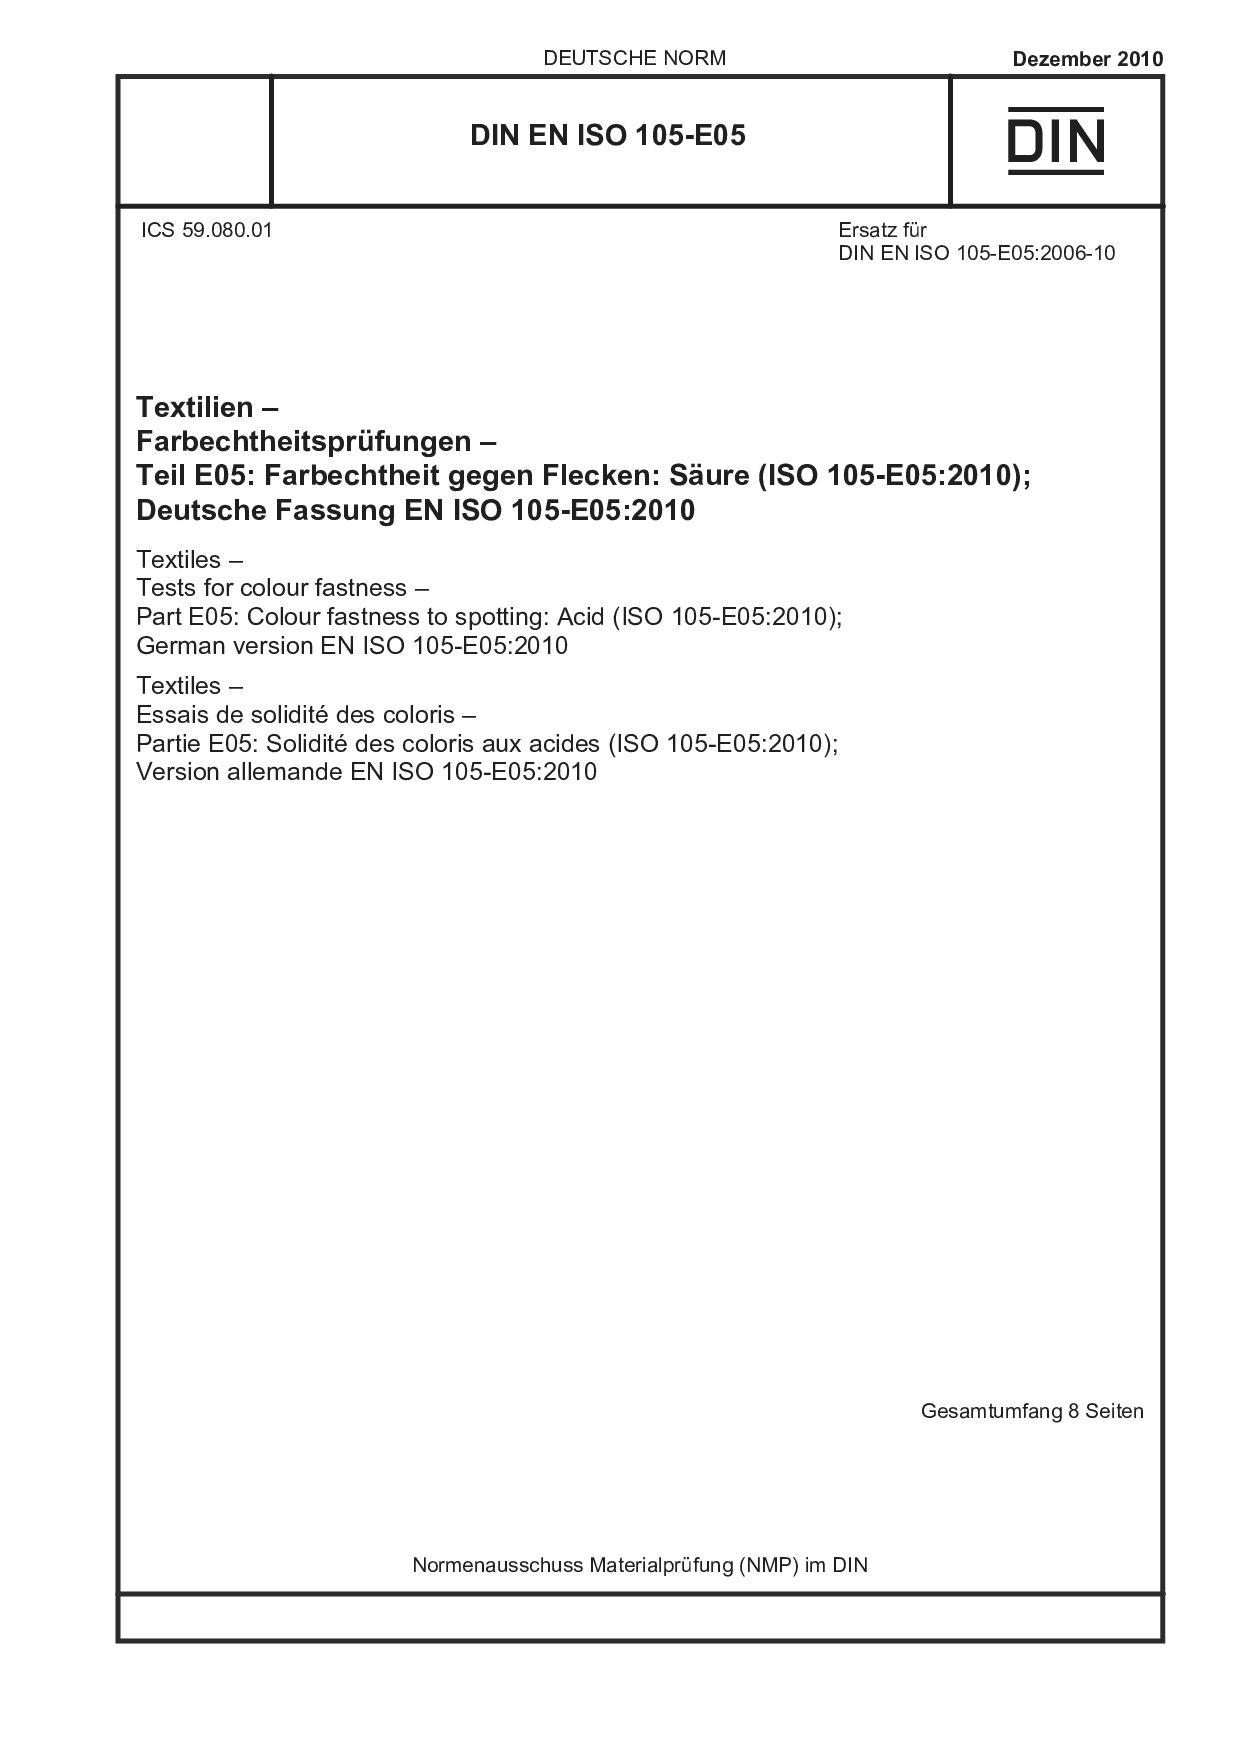 DIN EN ISO 105-E05:2010封面图